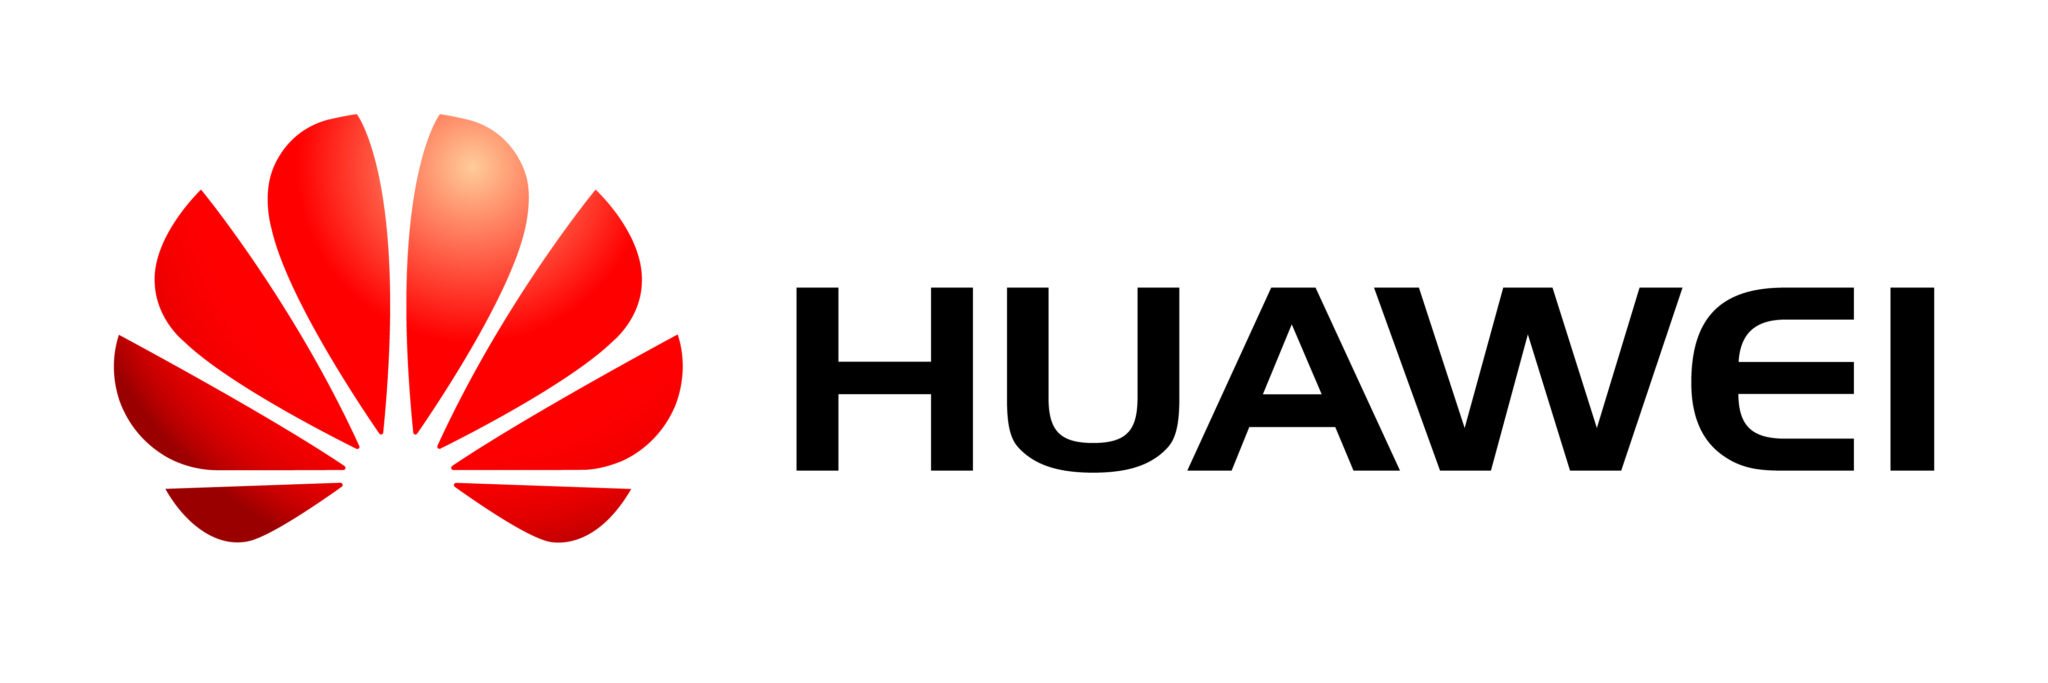 Huawei Data center